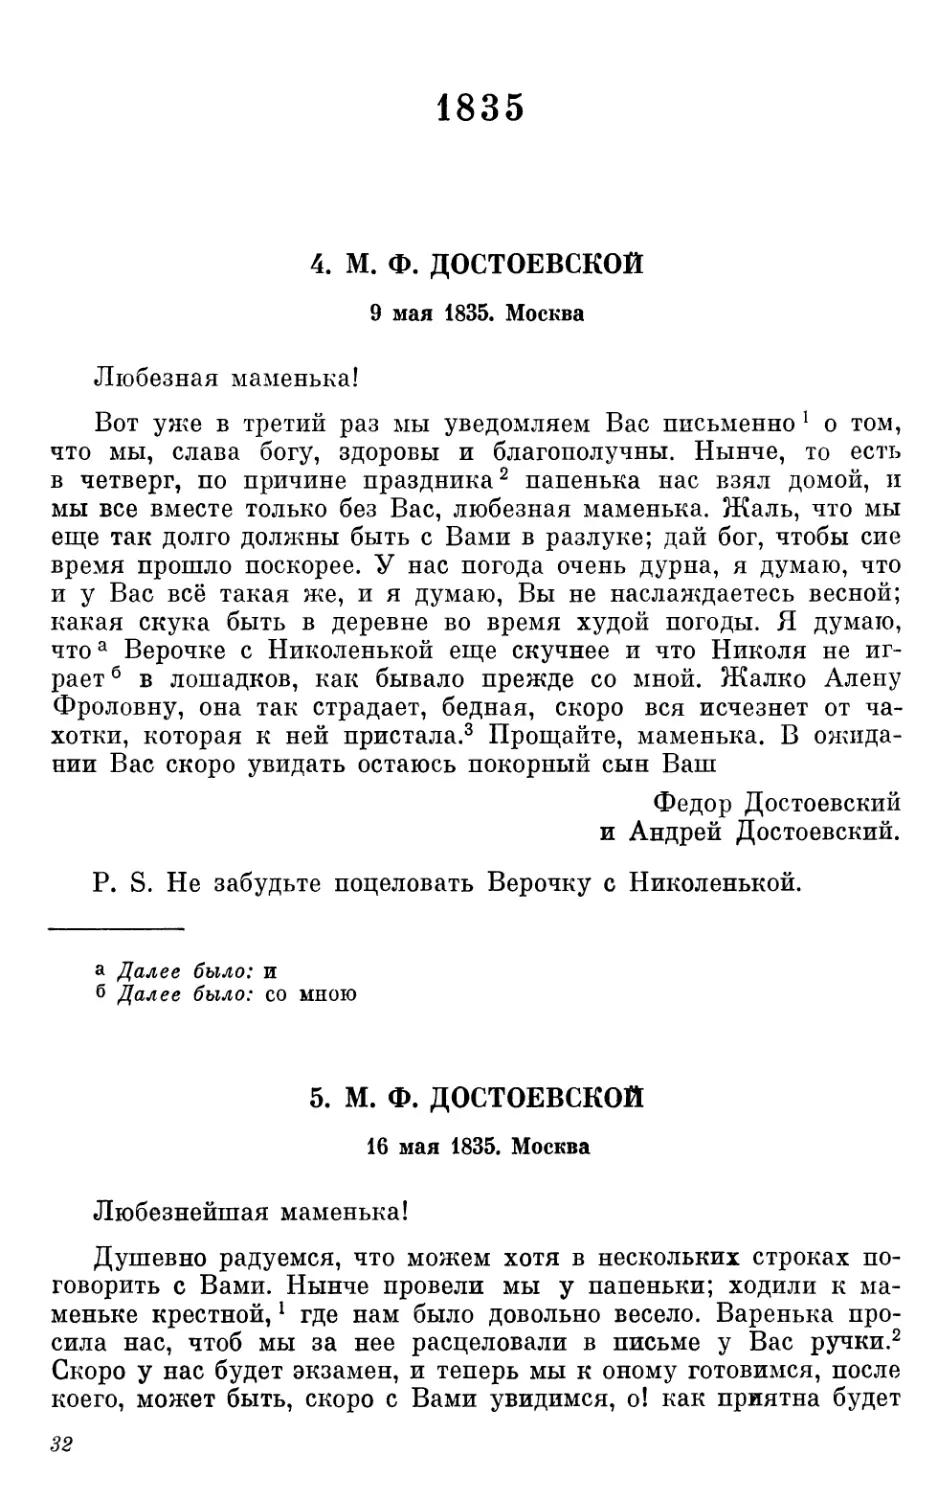 1835
5. М.Ф. Достоевской. 16 мая